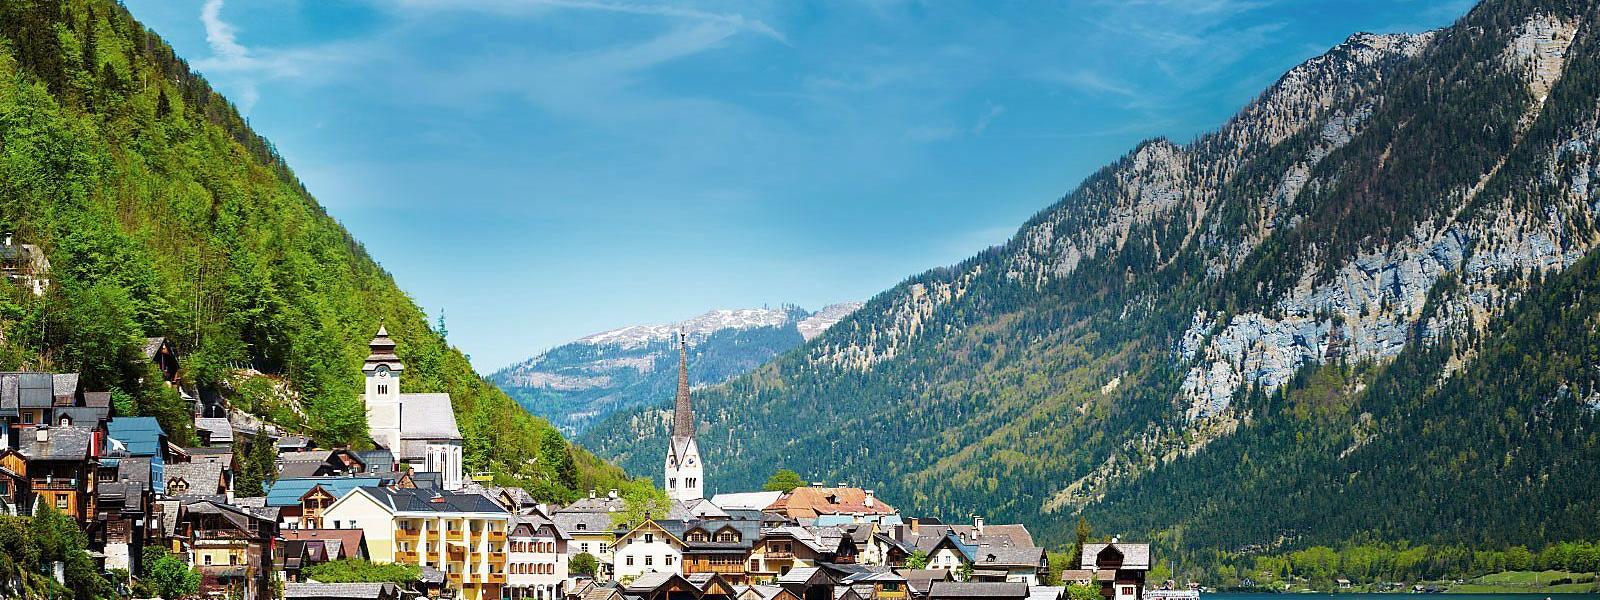 Luxus Ferienhäuser und Ferienwohnungen in den Österreichischen Alpen - BELLEVUE Ferienhaus